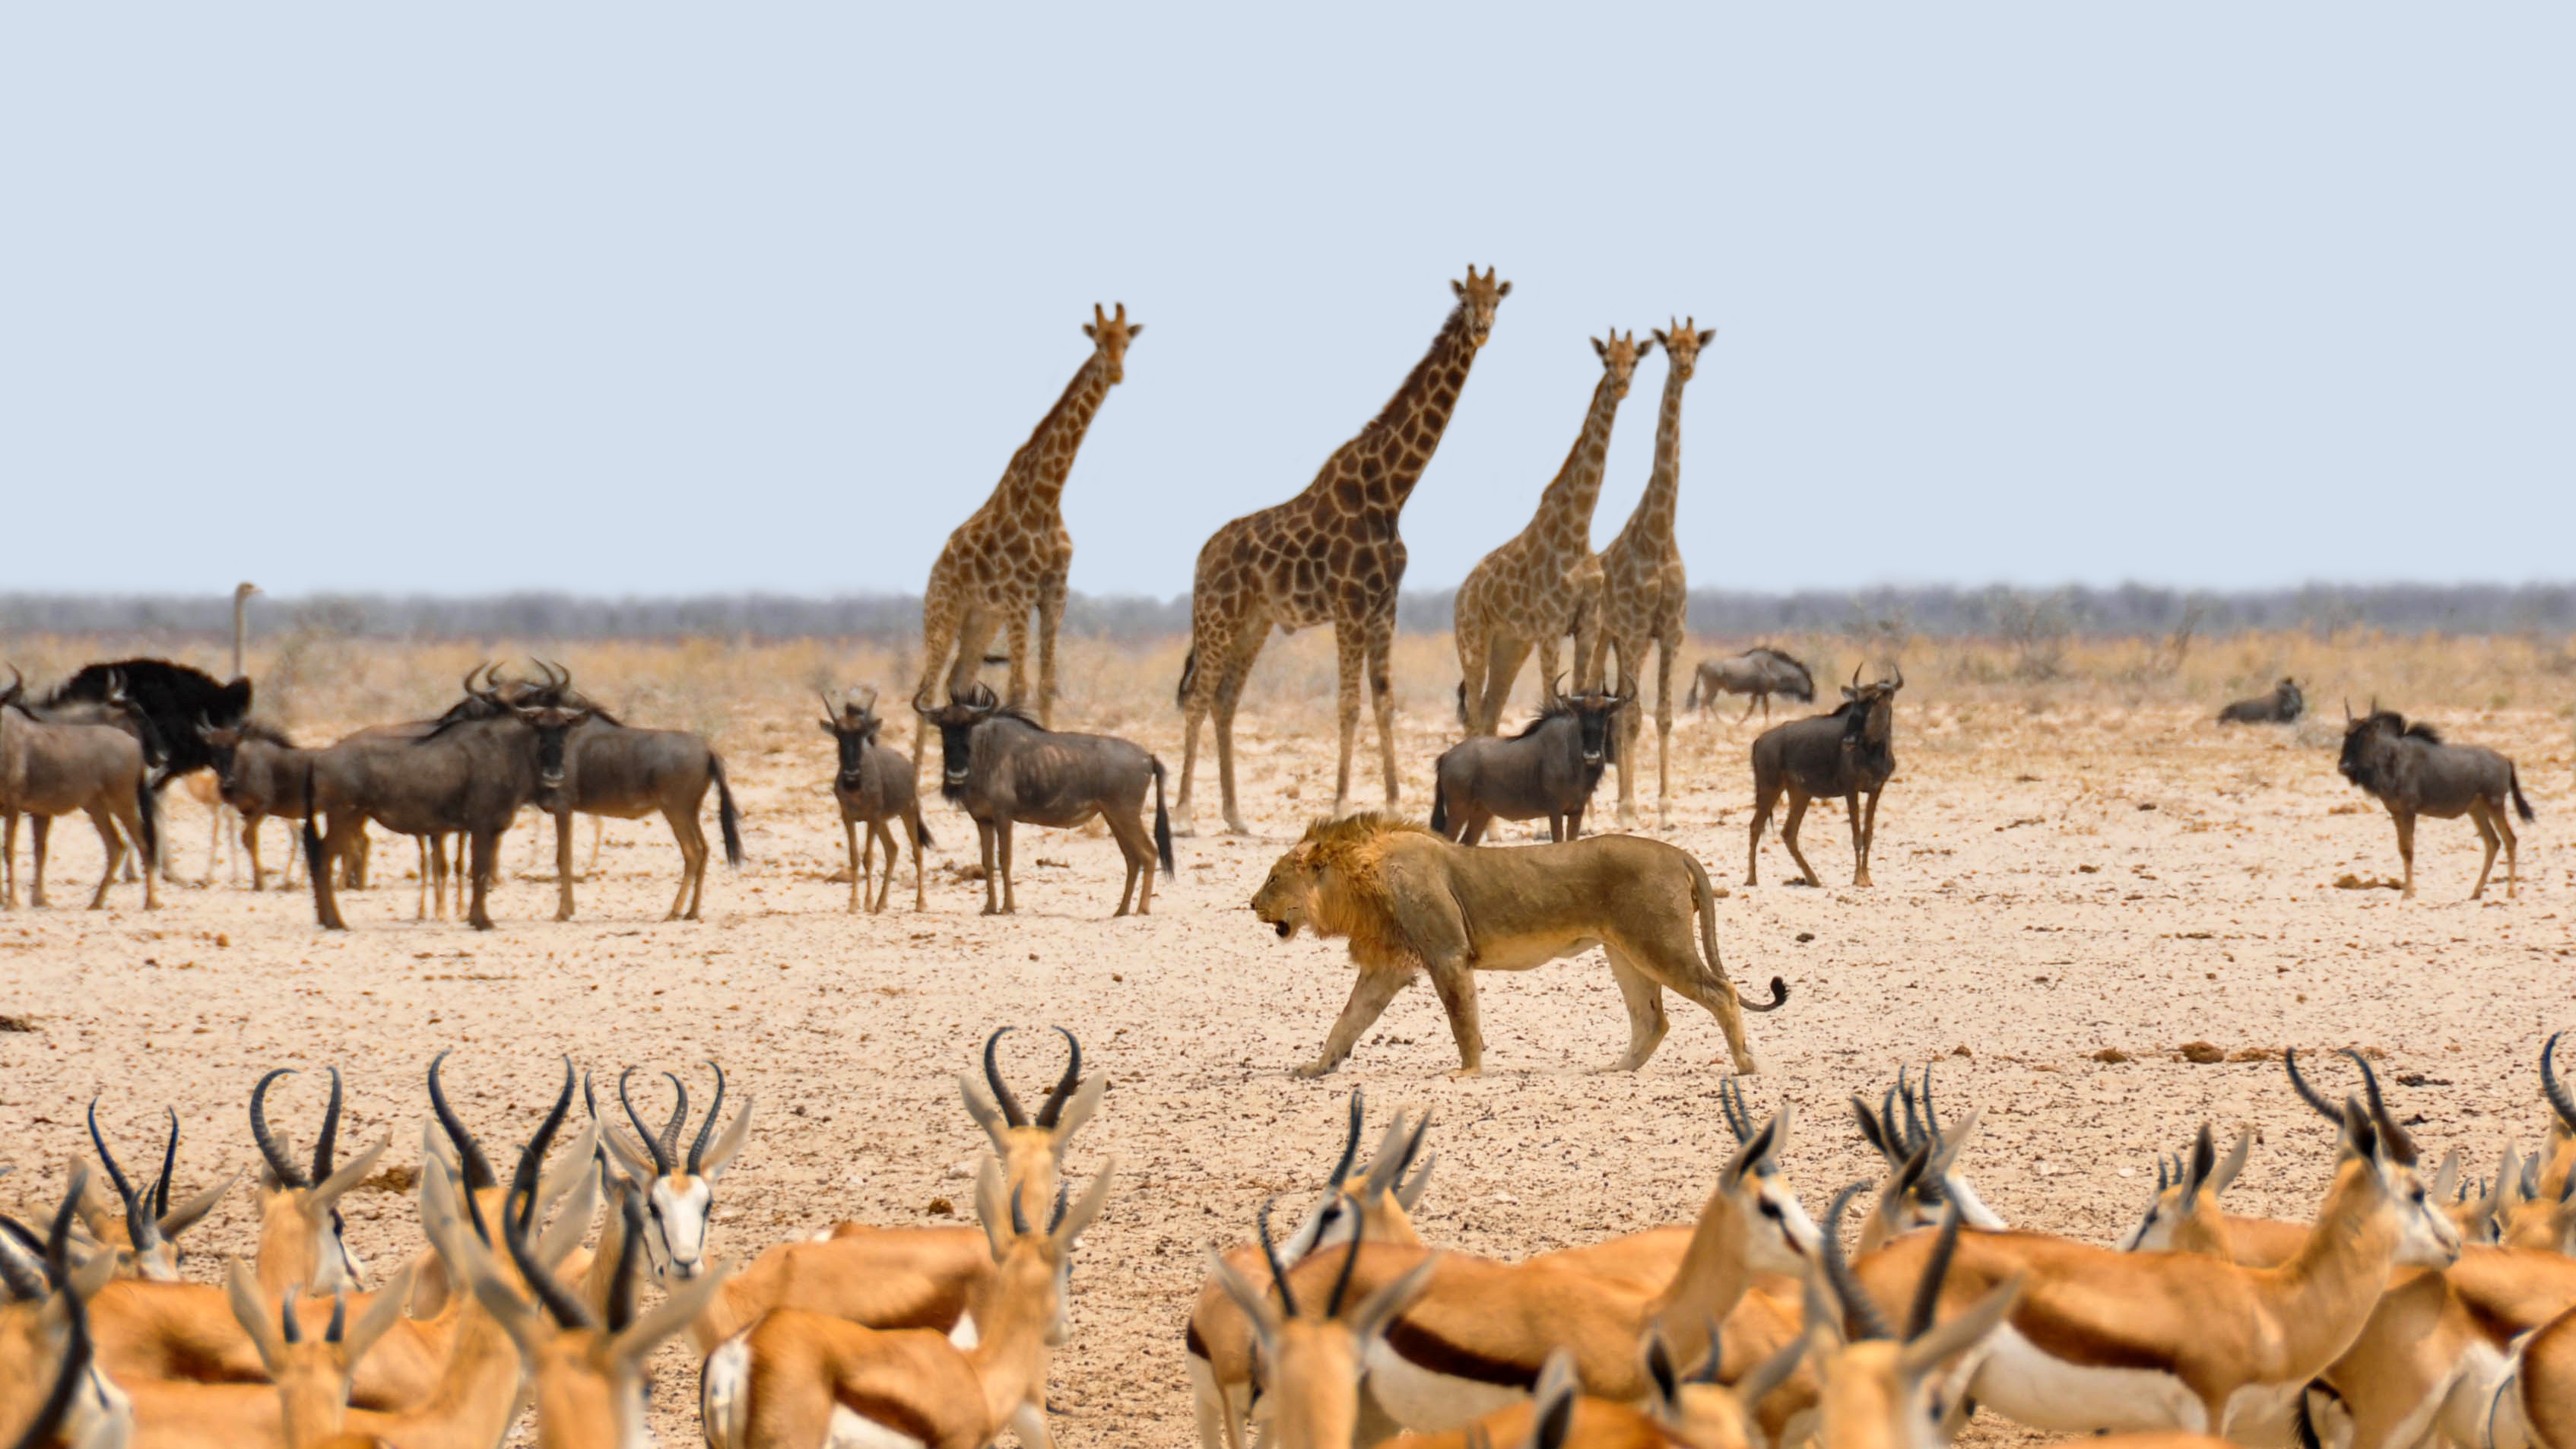 Photograph of different kinds of animals. giraffes, 4. lion, 1. More deer than giraffes.